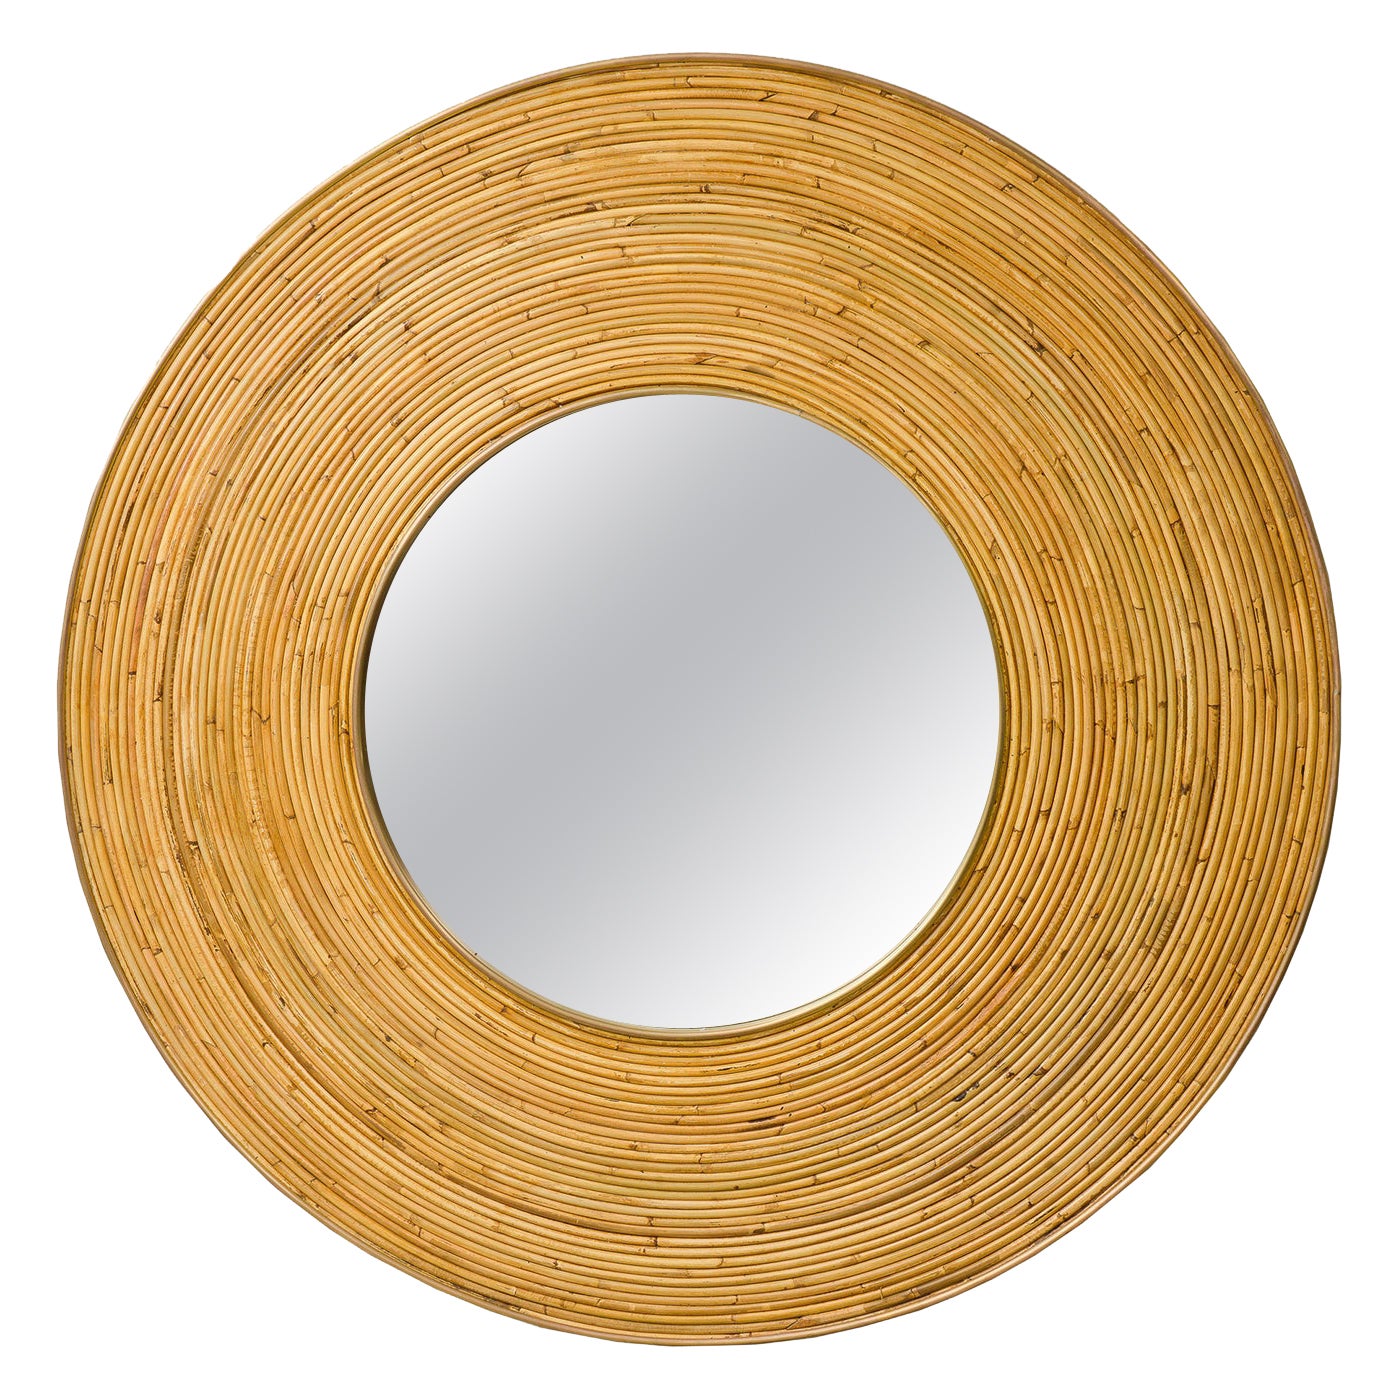 Contemporary Italian Circular Rattan Mirror